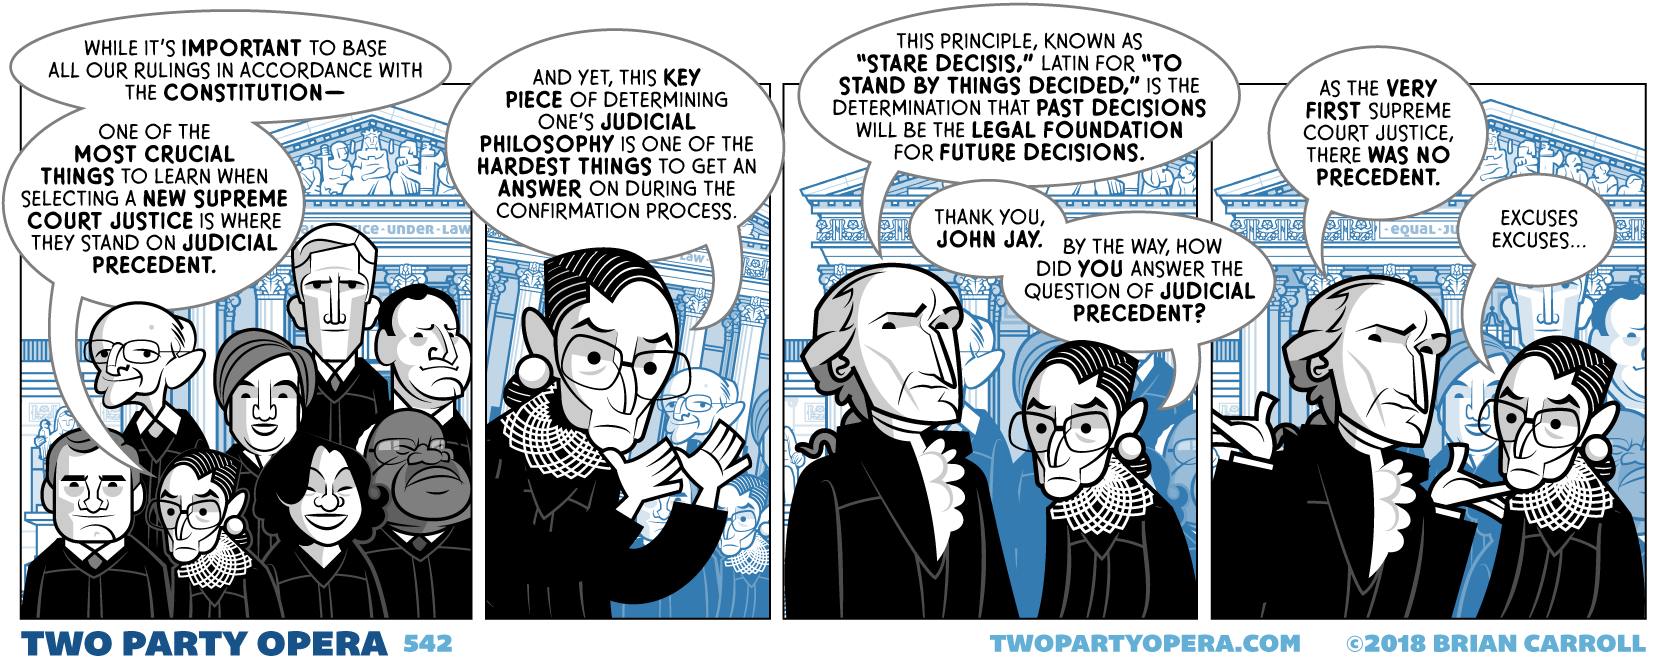 Judicial Precedent